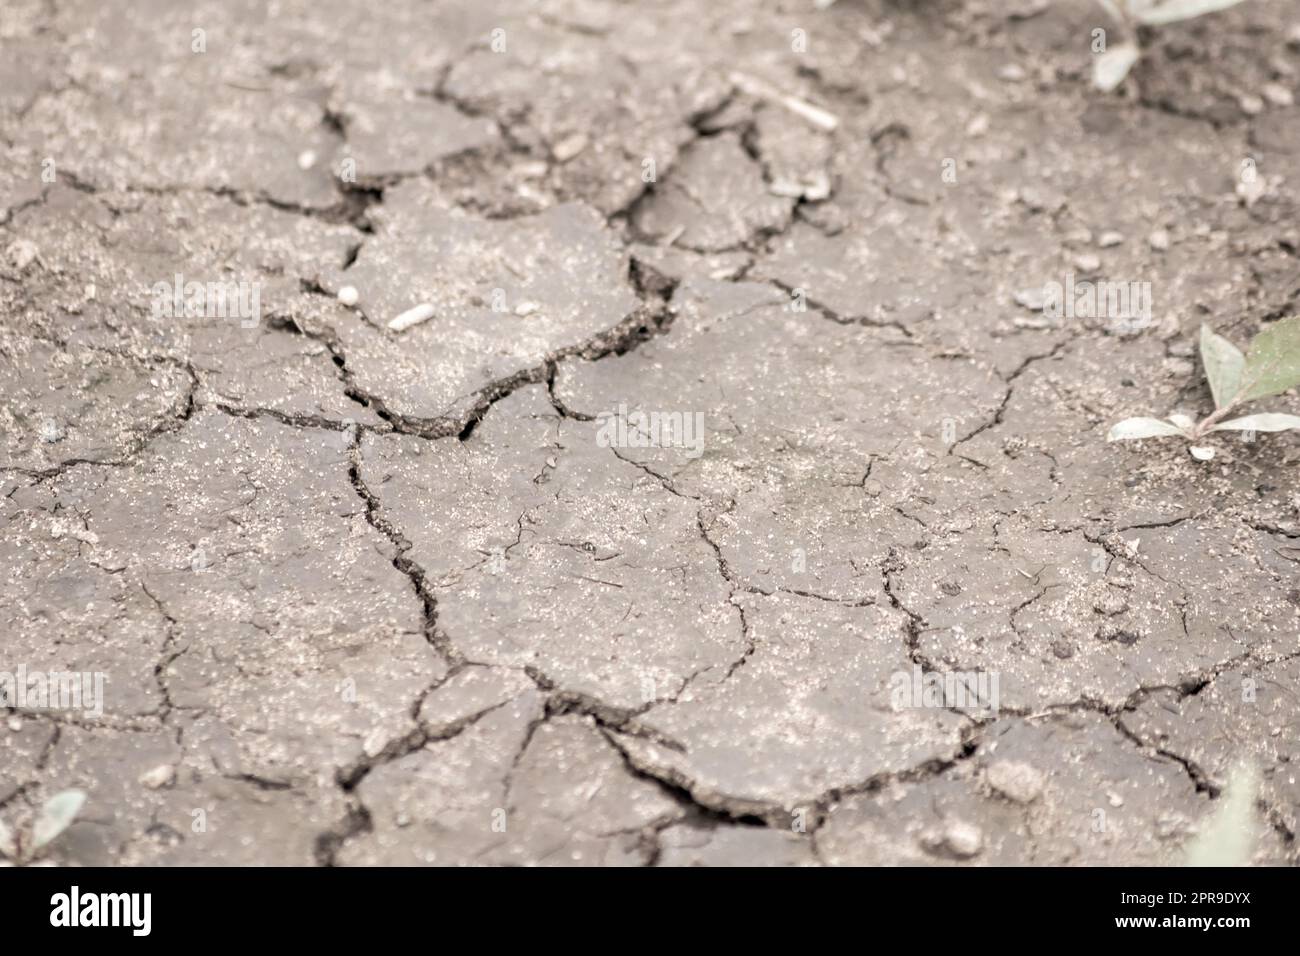 Kein Niederschlag verursacht trockene Felder während der Dürre nach sehr heißer Hitze im Sommer für Ödland mit Rissen an der Oberfläche und zerbrochenes Ackerland aufgrund von Klimaveränderungen und globaler Erwärmung für Ernteverluste Stockfoto